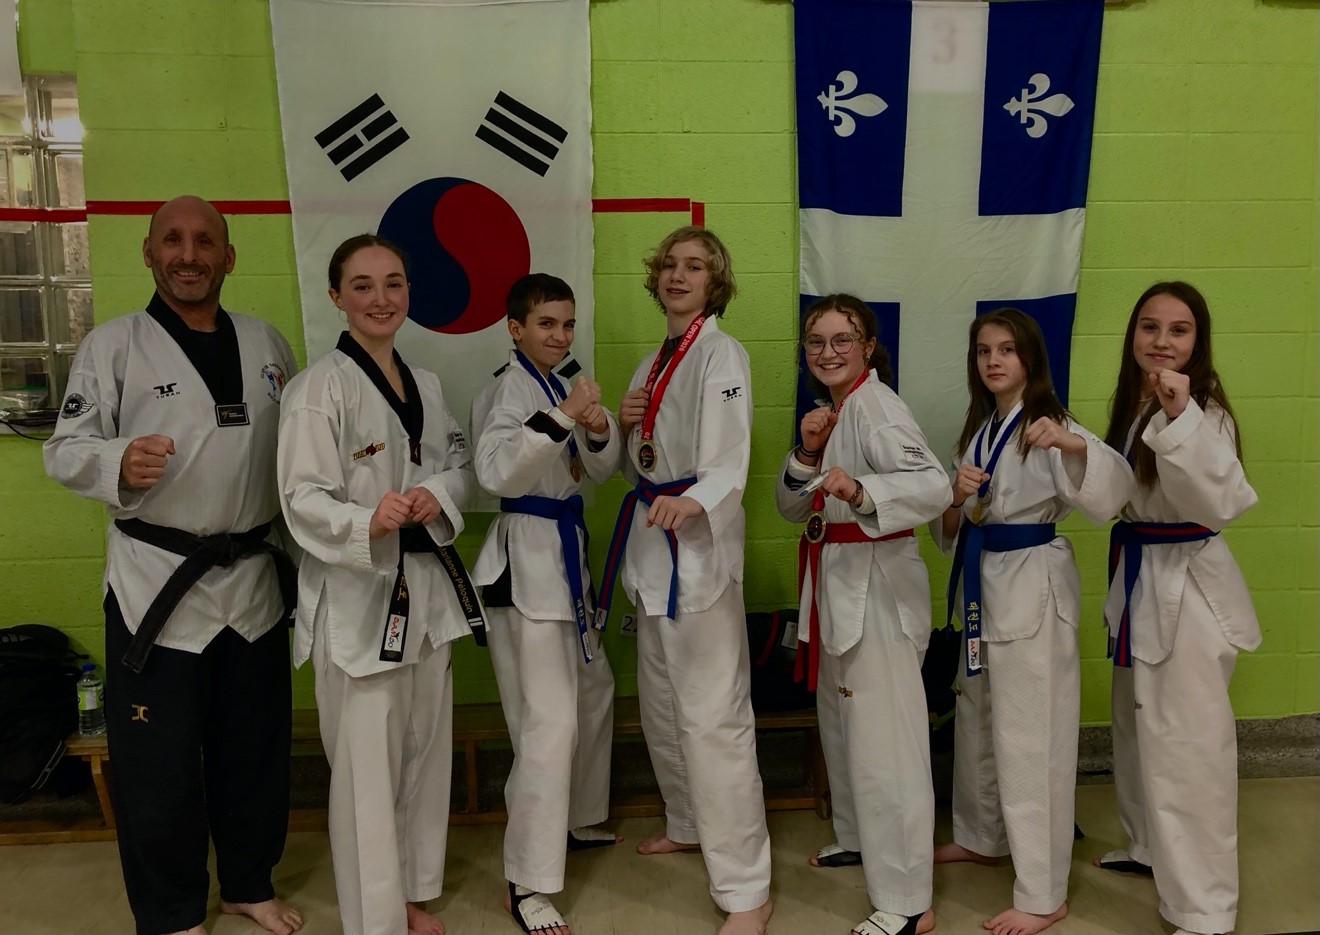 Le Club Taekwondo Boucherville enverra cinq athlètes aux Jeux du Québec